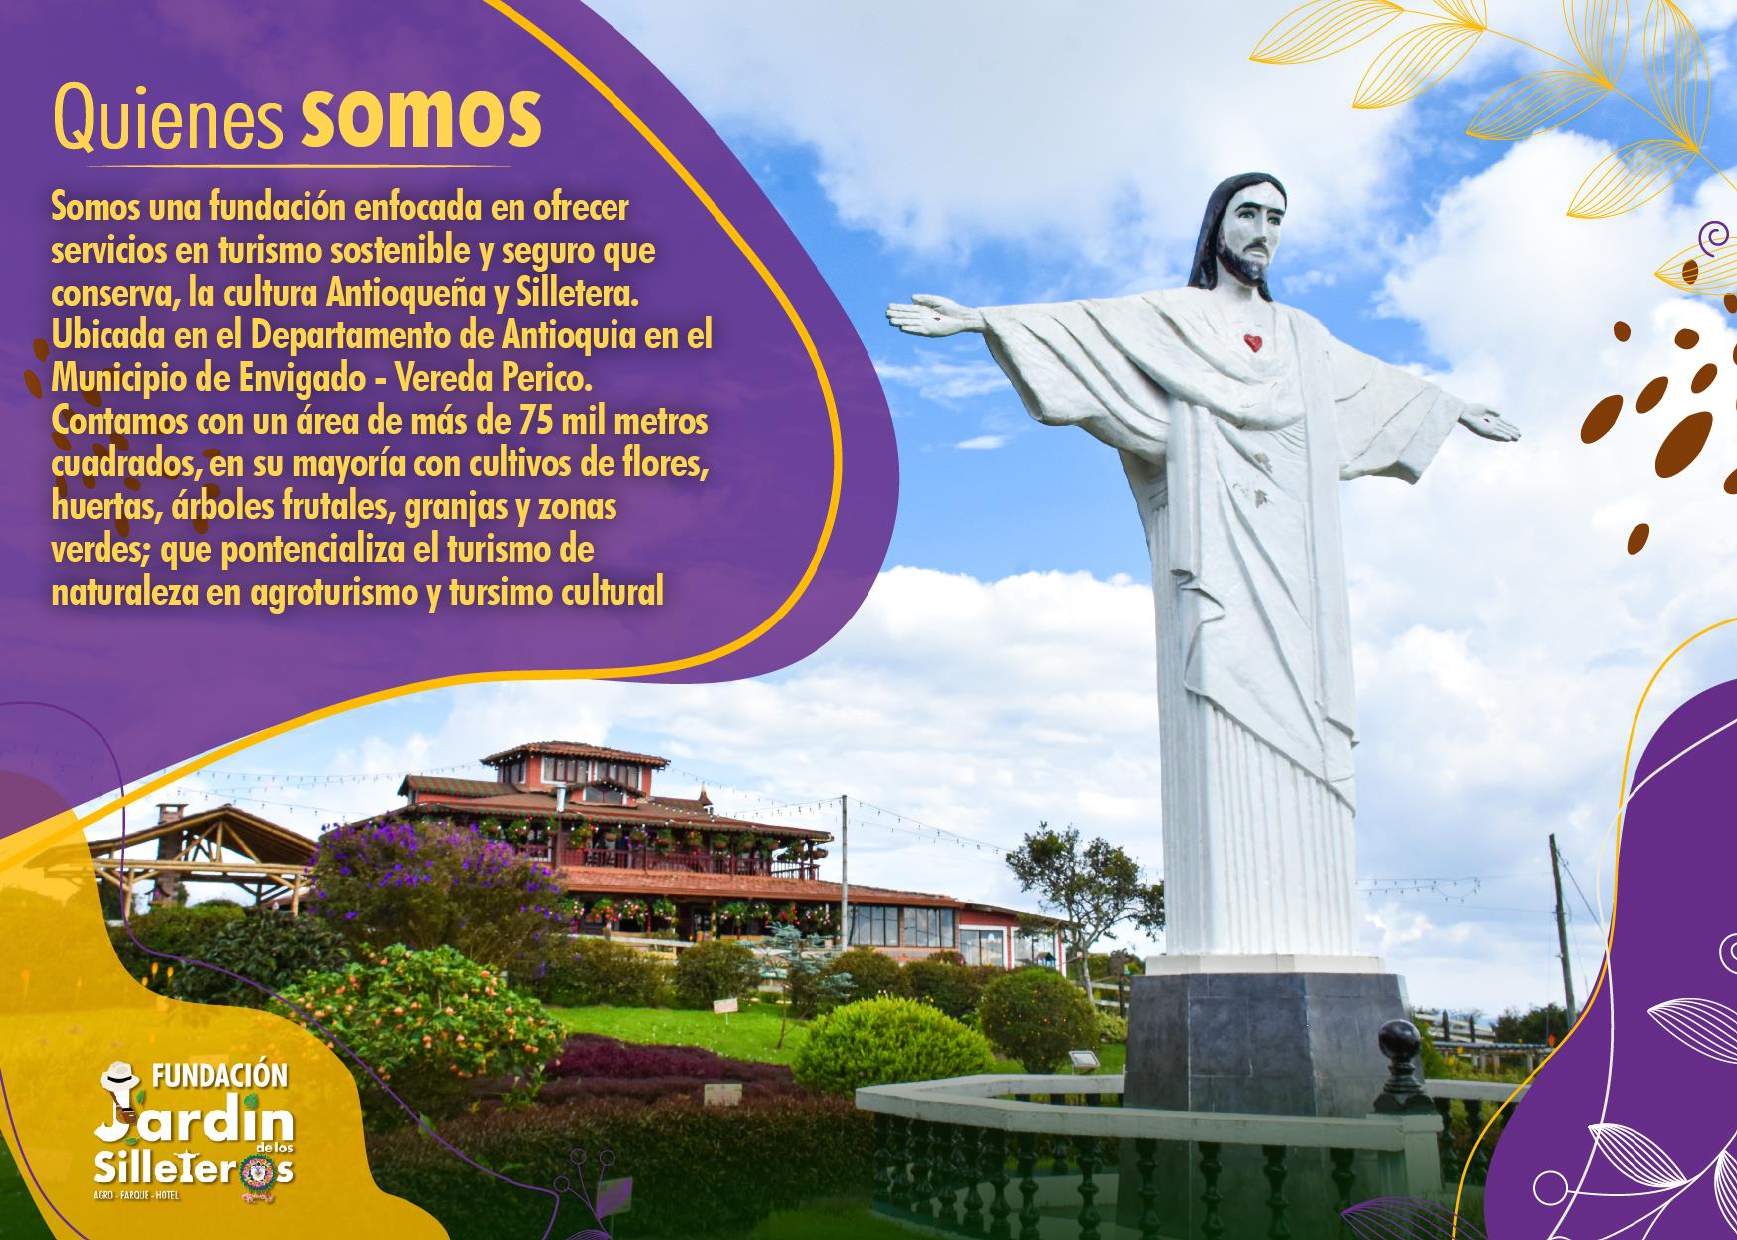 Fundación Jardlos Silleteros 2023 - 2 - Envigado Antioquia